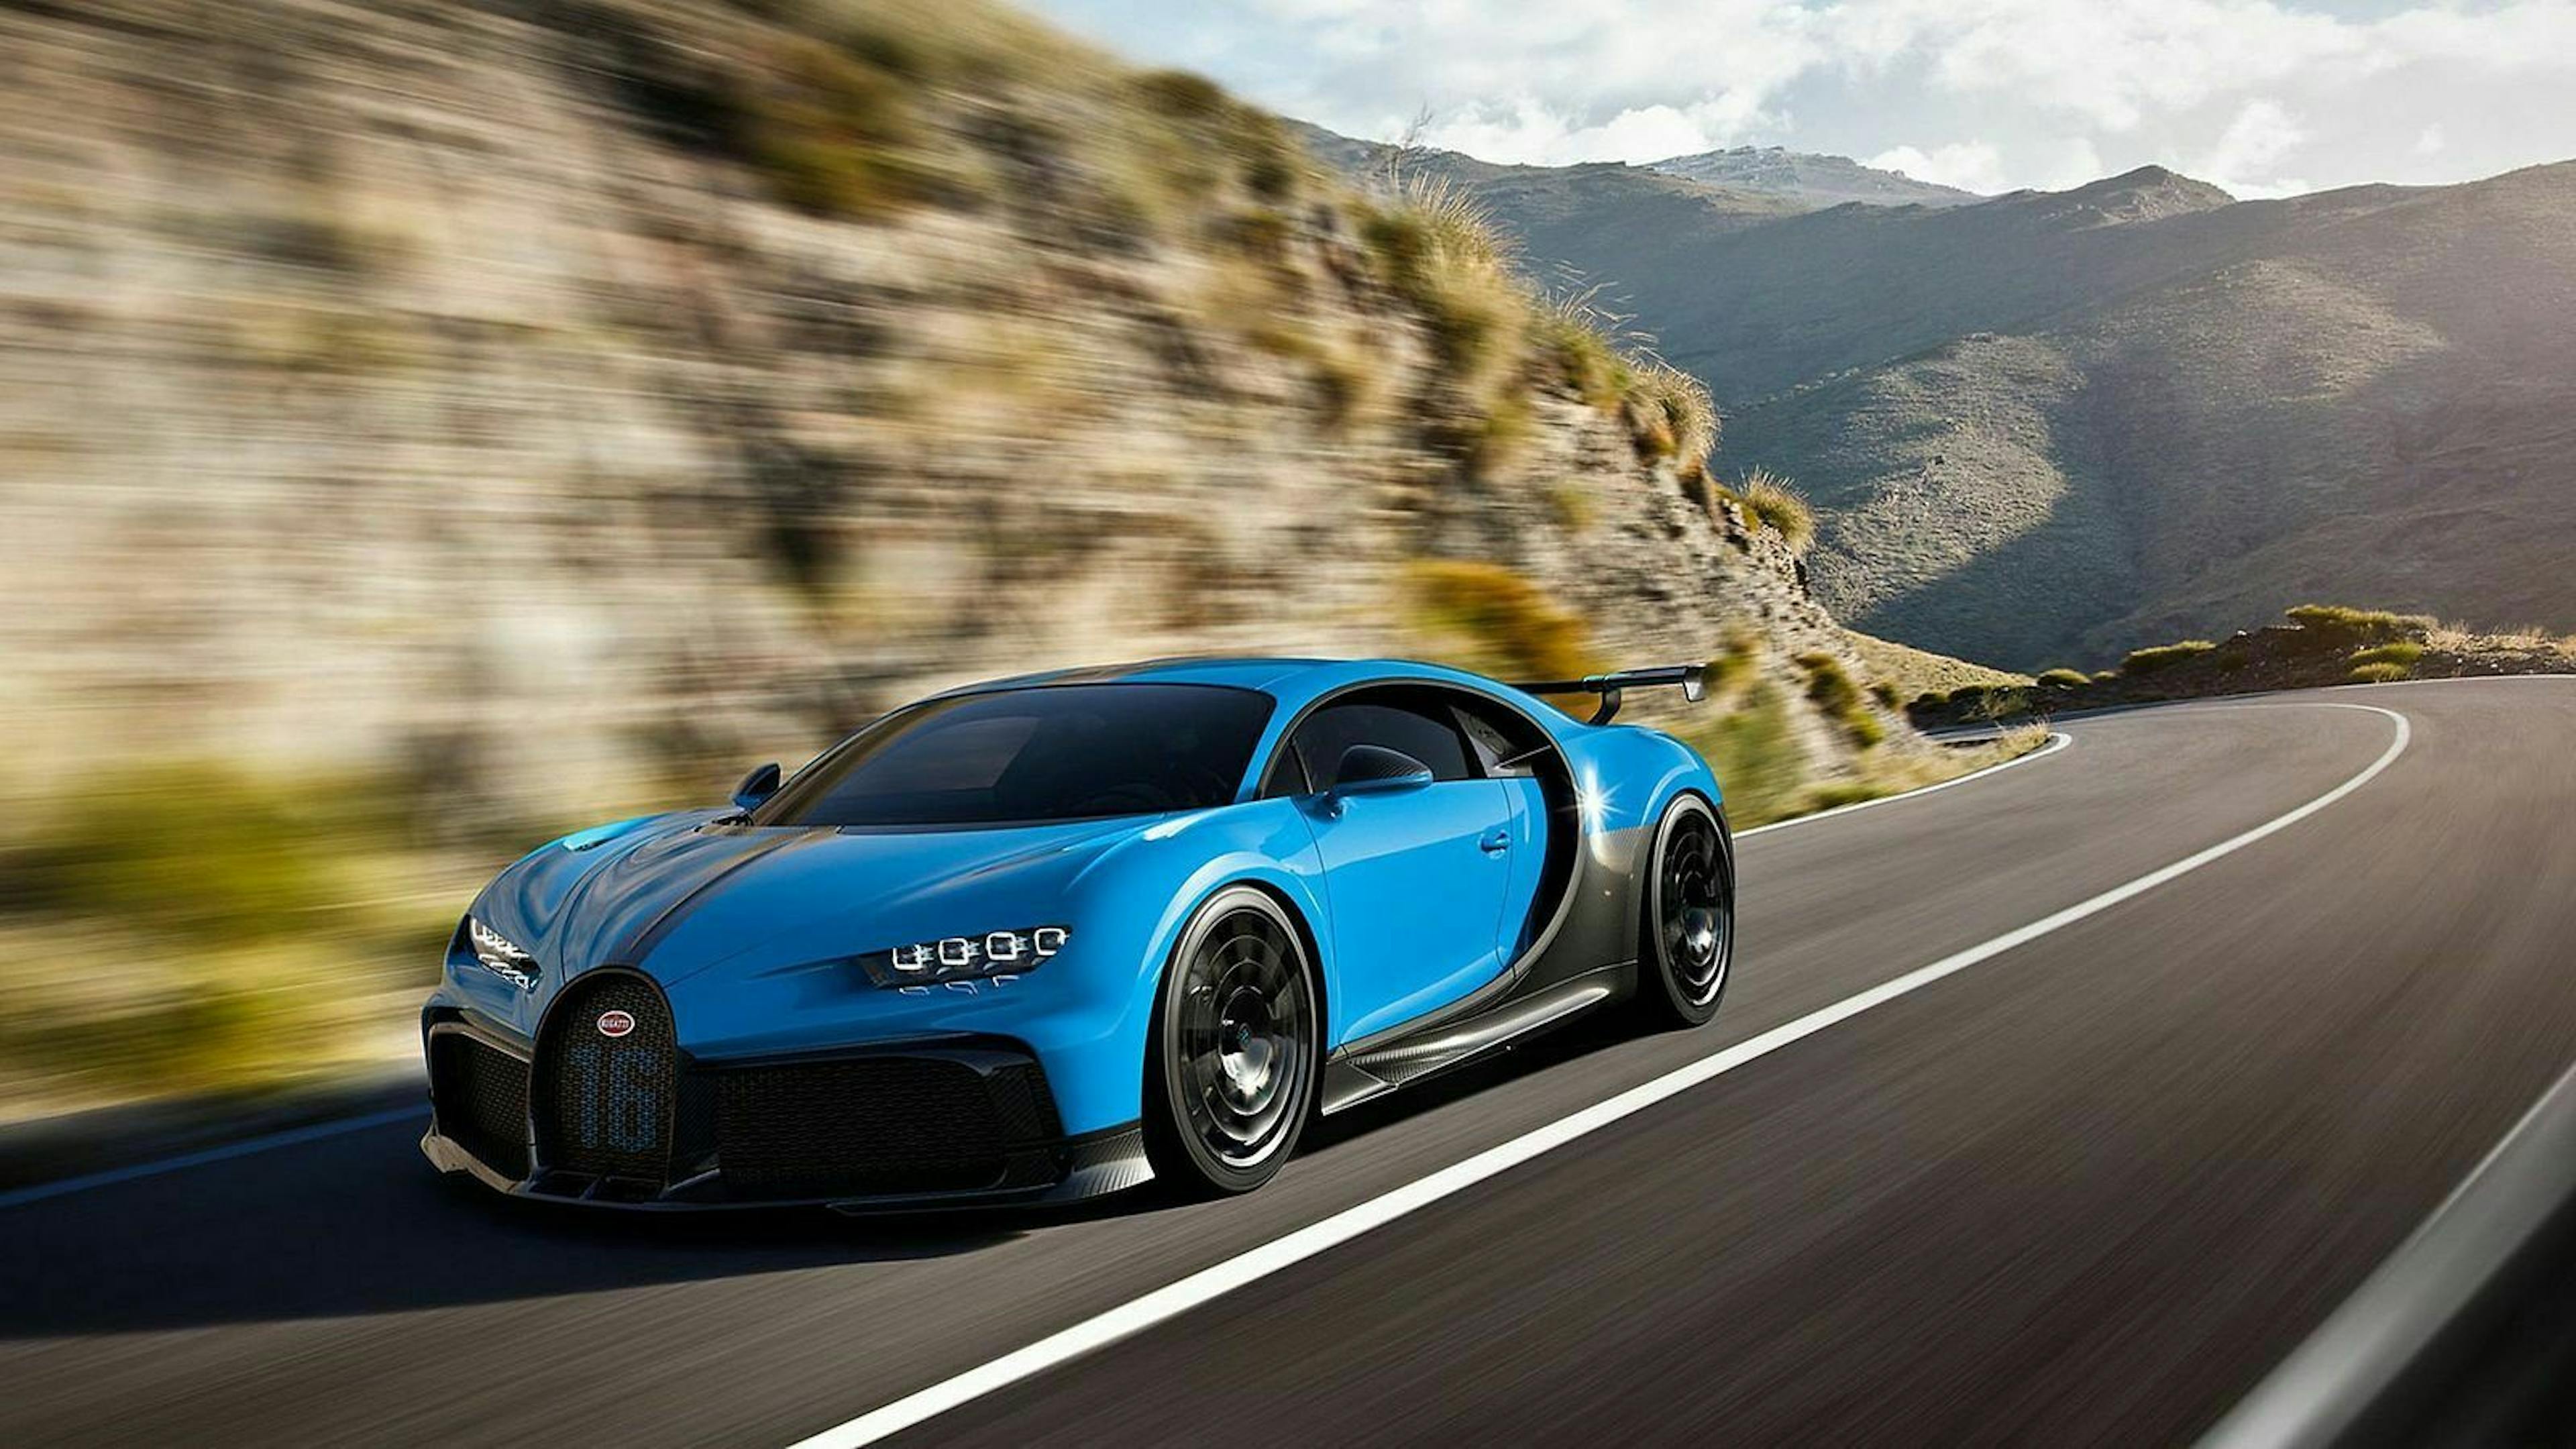 Zu sehen ist der Bugatti Chiron, fahrend